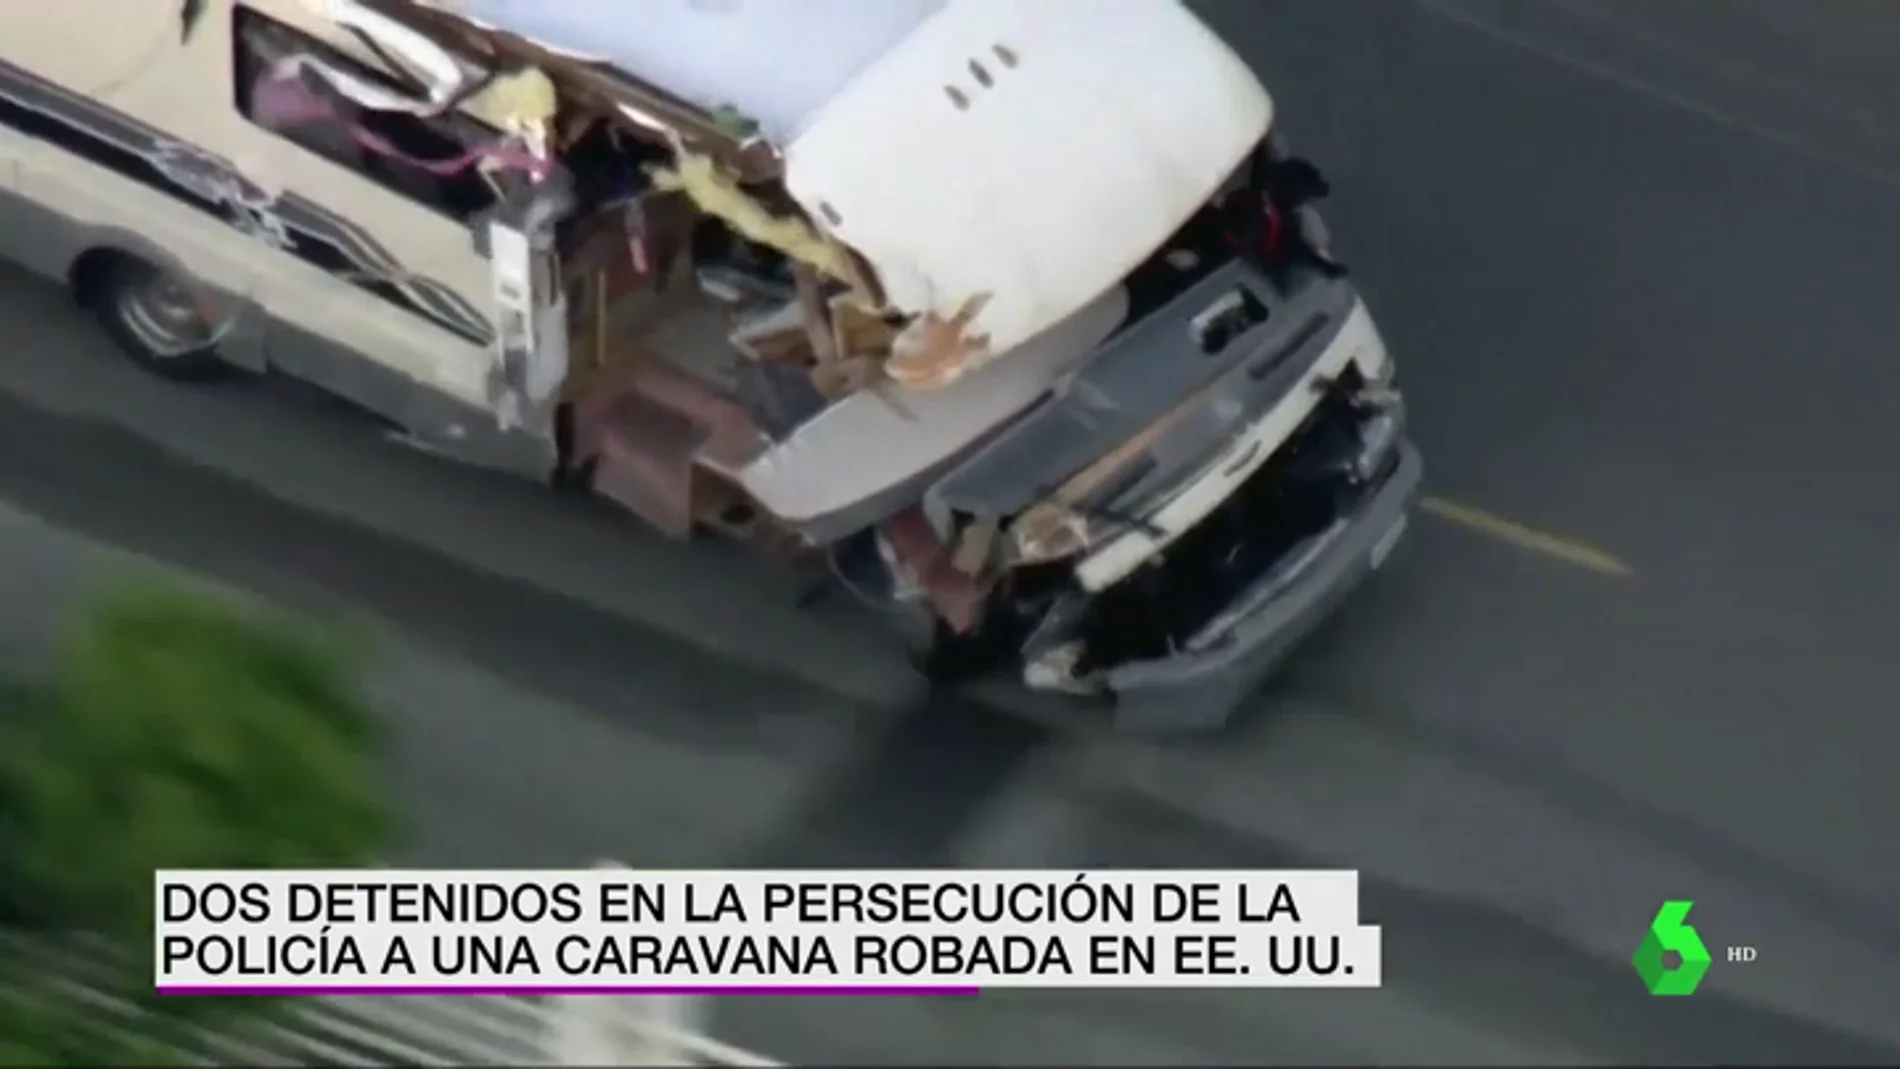 Dos ladrones a bordo de una autocaravana protagonizan una violenta persecución policial en Los Ángeles